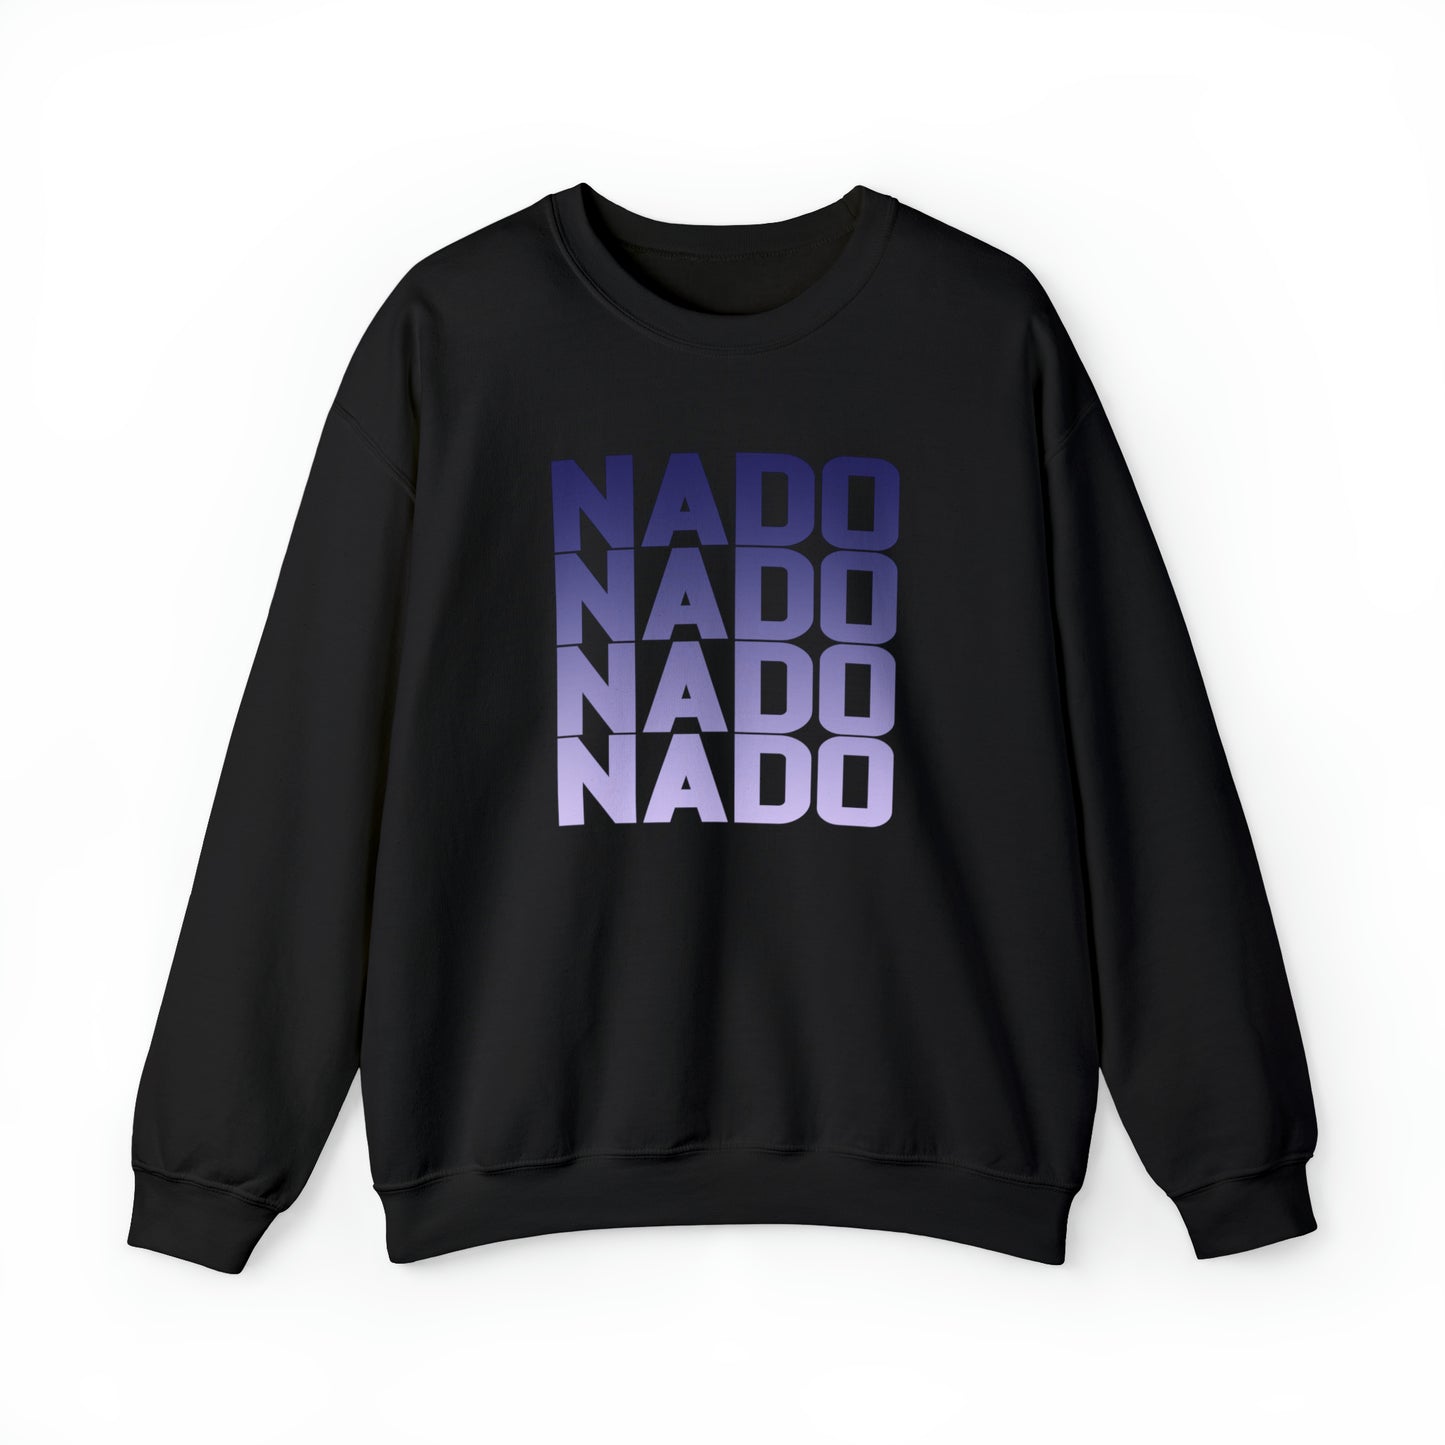 Nado x 4 - Bella Canvas Crewneck Sweatshirt